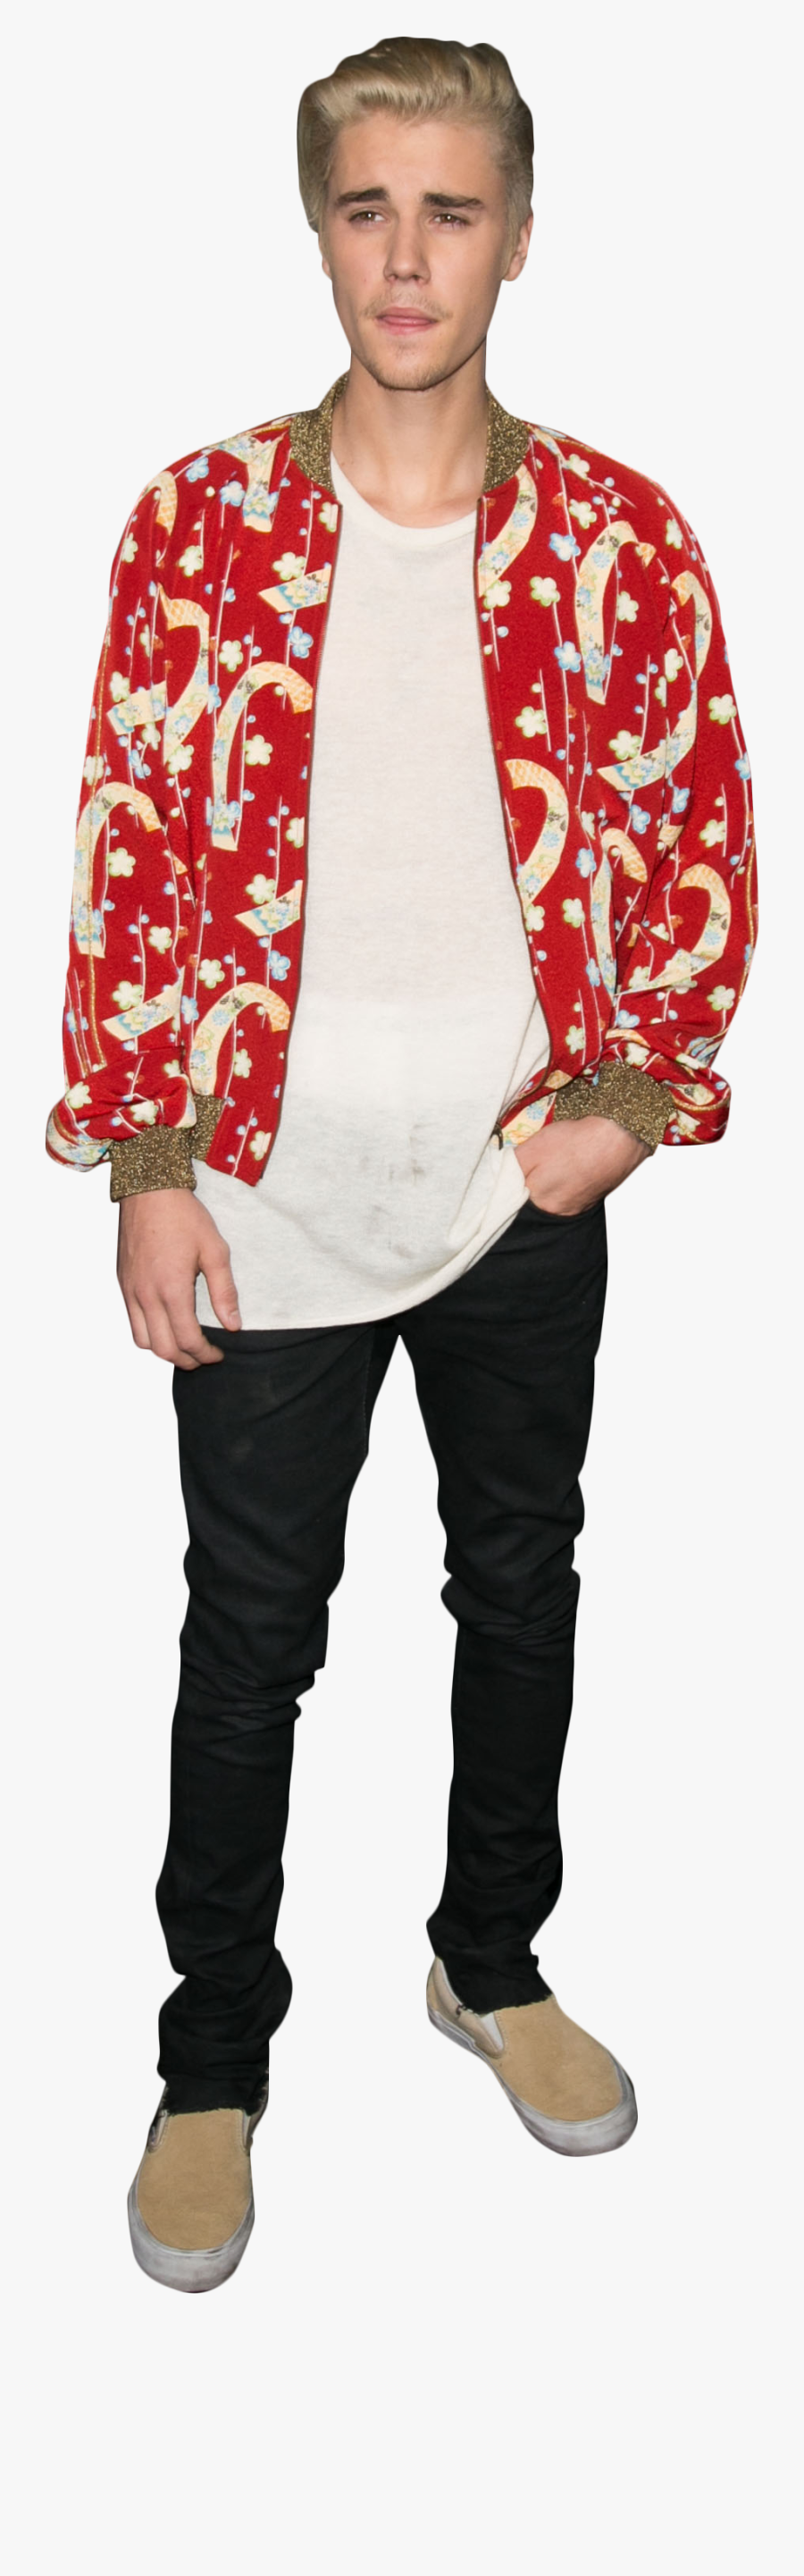 Celebrity Png Justin Bieber Dressed - Justin Bieber In Red Shirt, Transparent Clipart